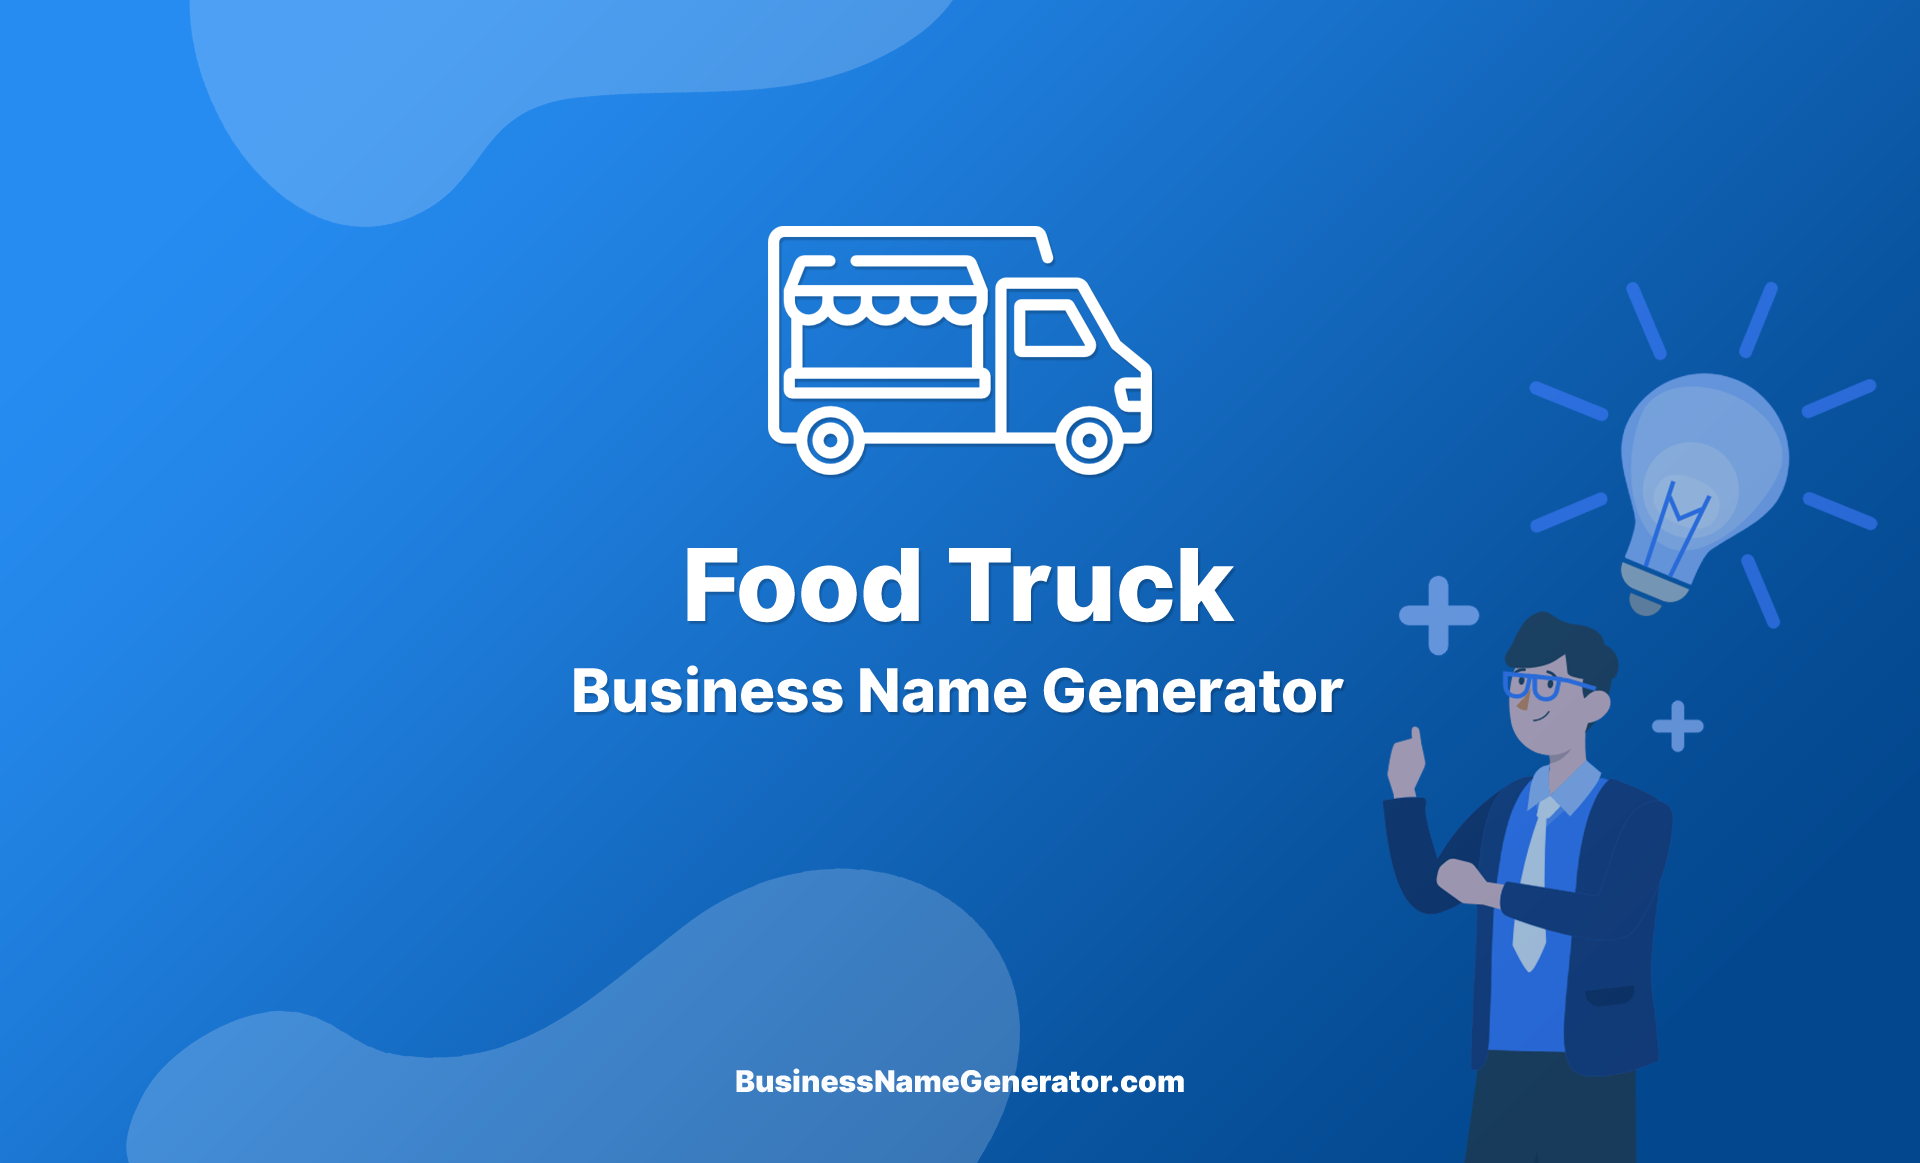 Food Truck Business Name Generator